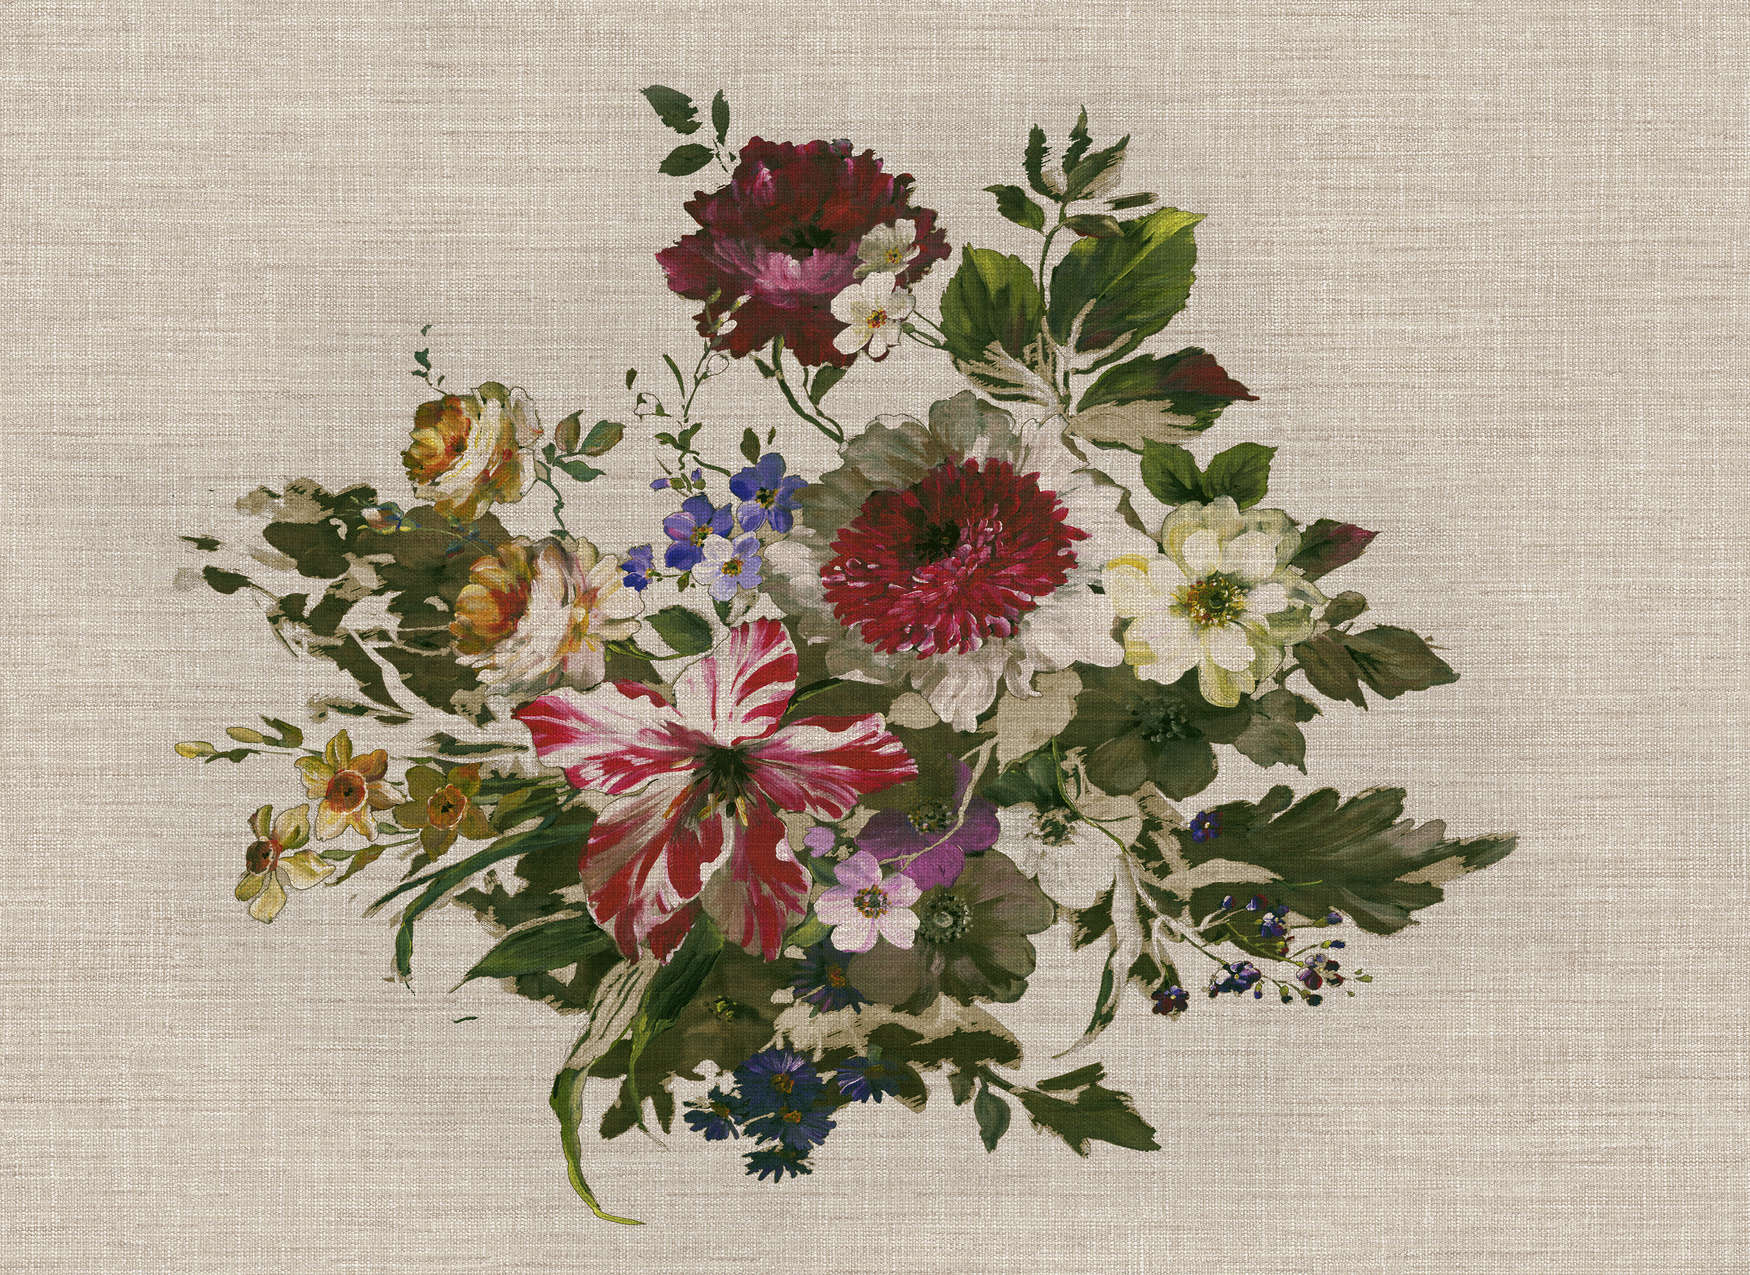             Fototapete gemalte Blumen im Vintage Stil & Leinenoptik – Bunt, Grün, Beige
        